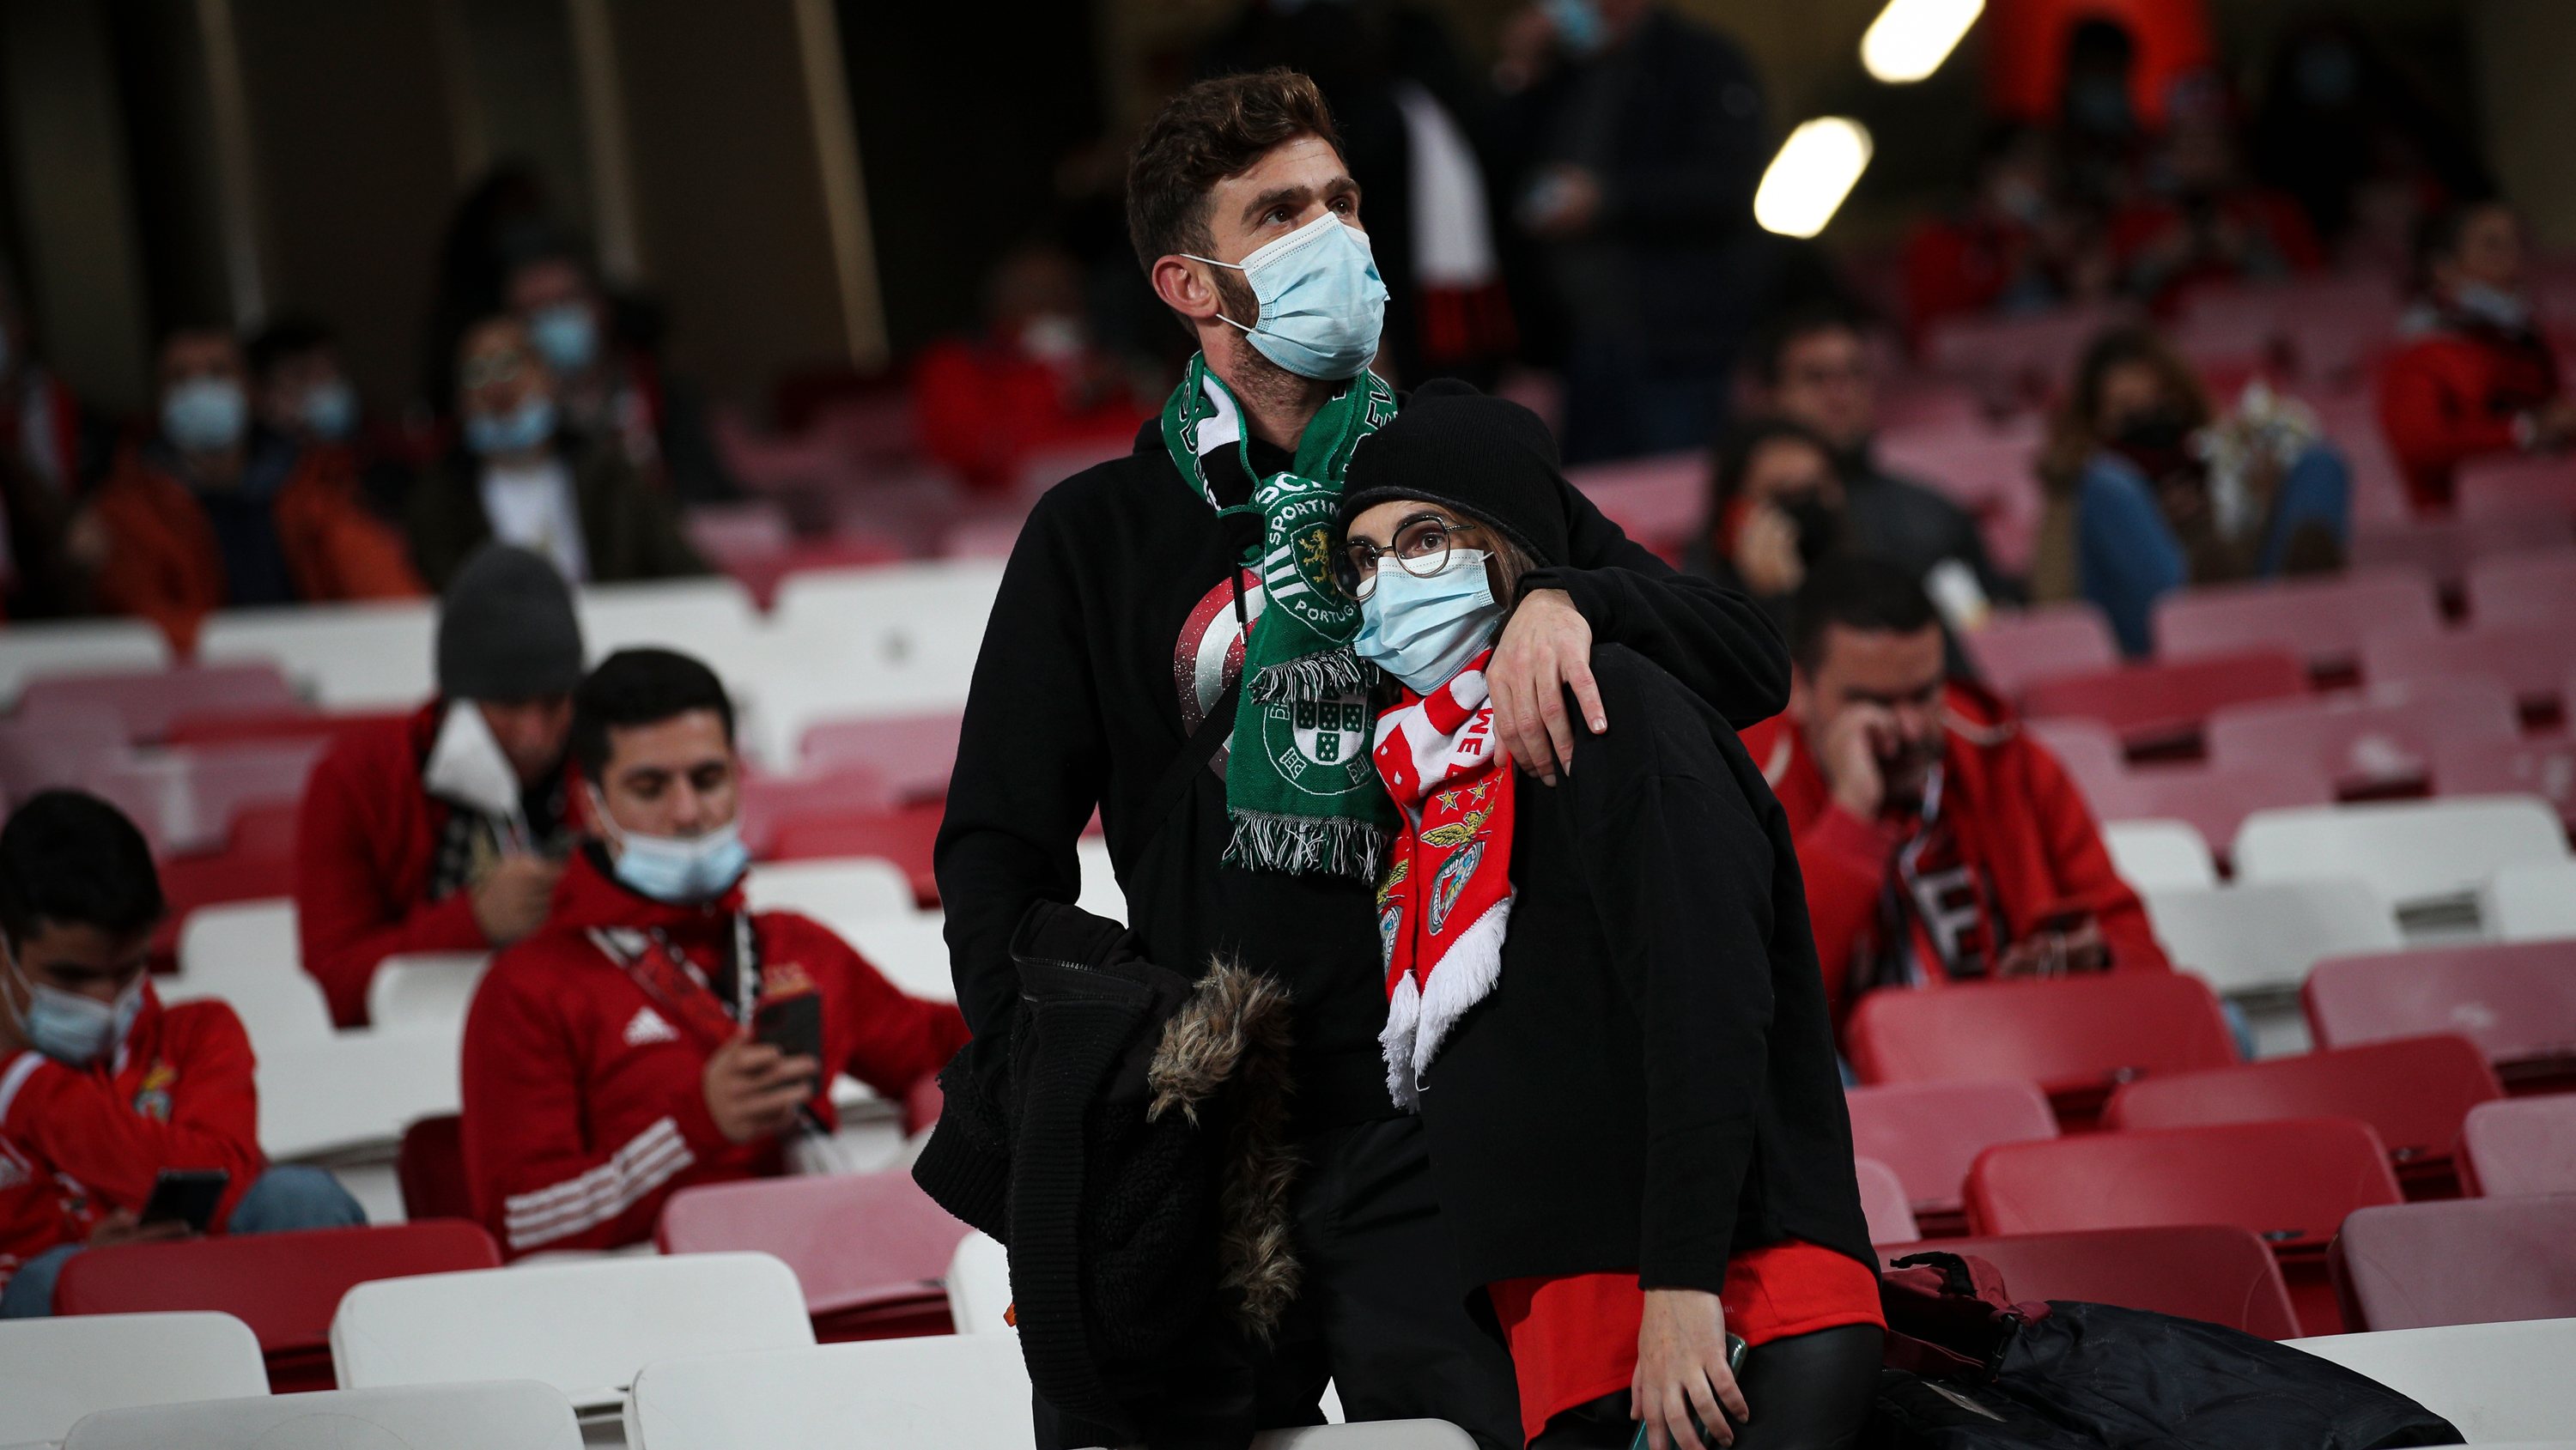 Benfica-Sporting: a conversa sobre o dérbi pode começar por aqui